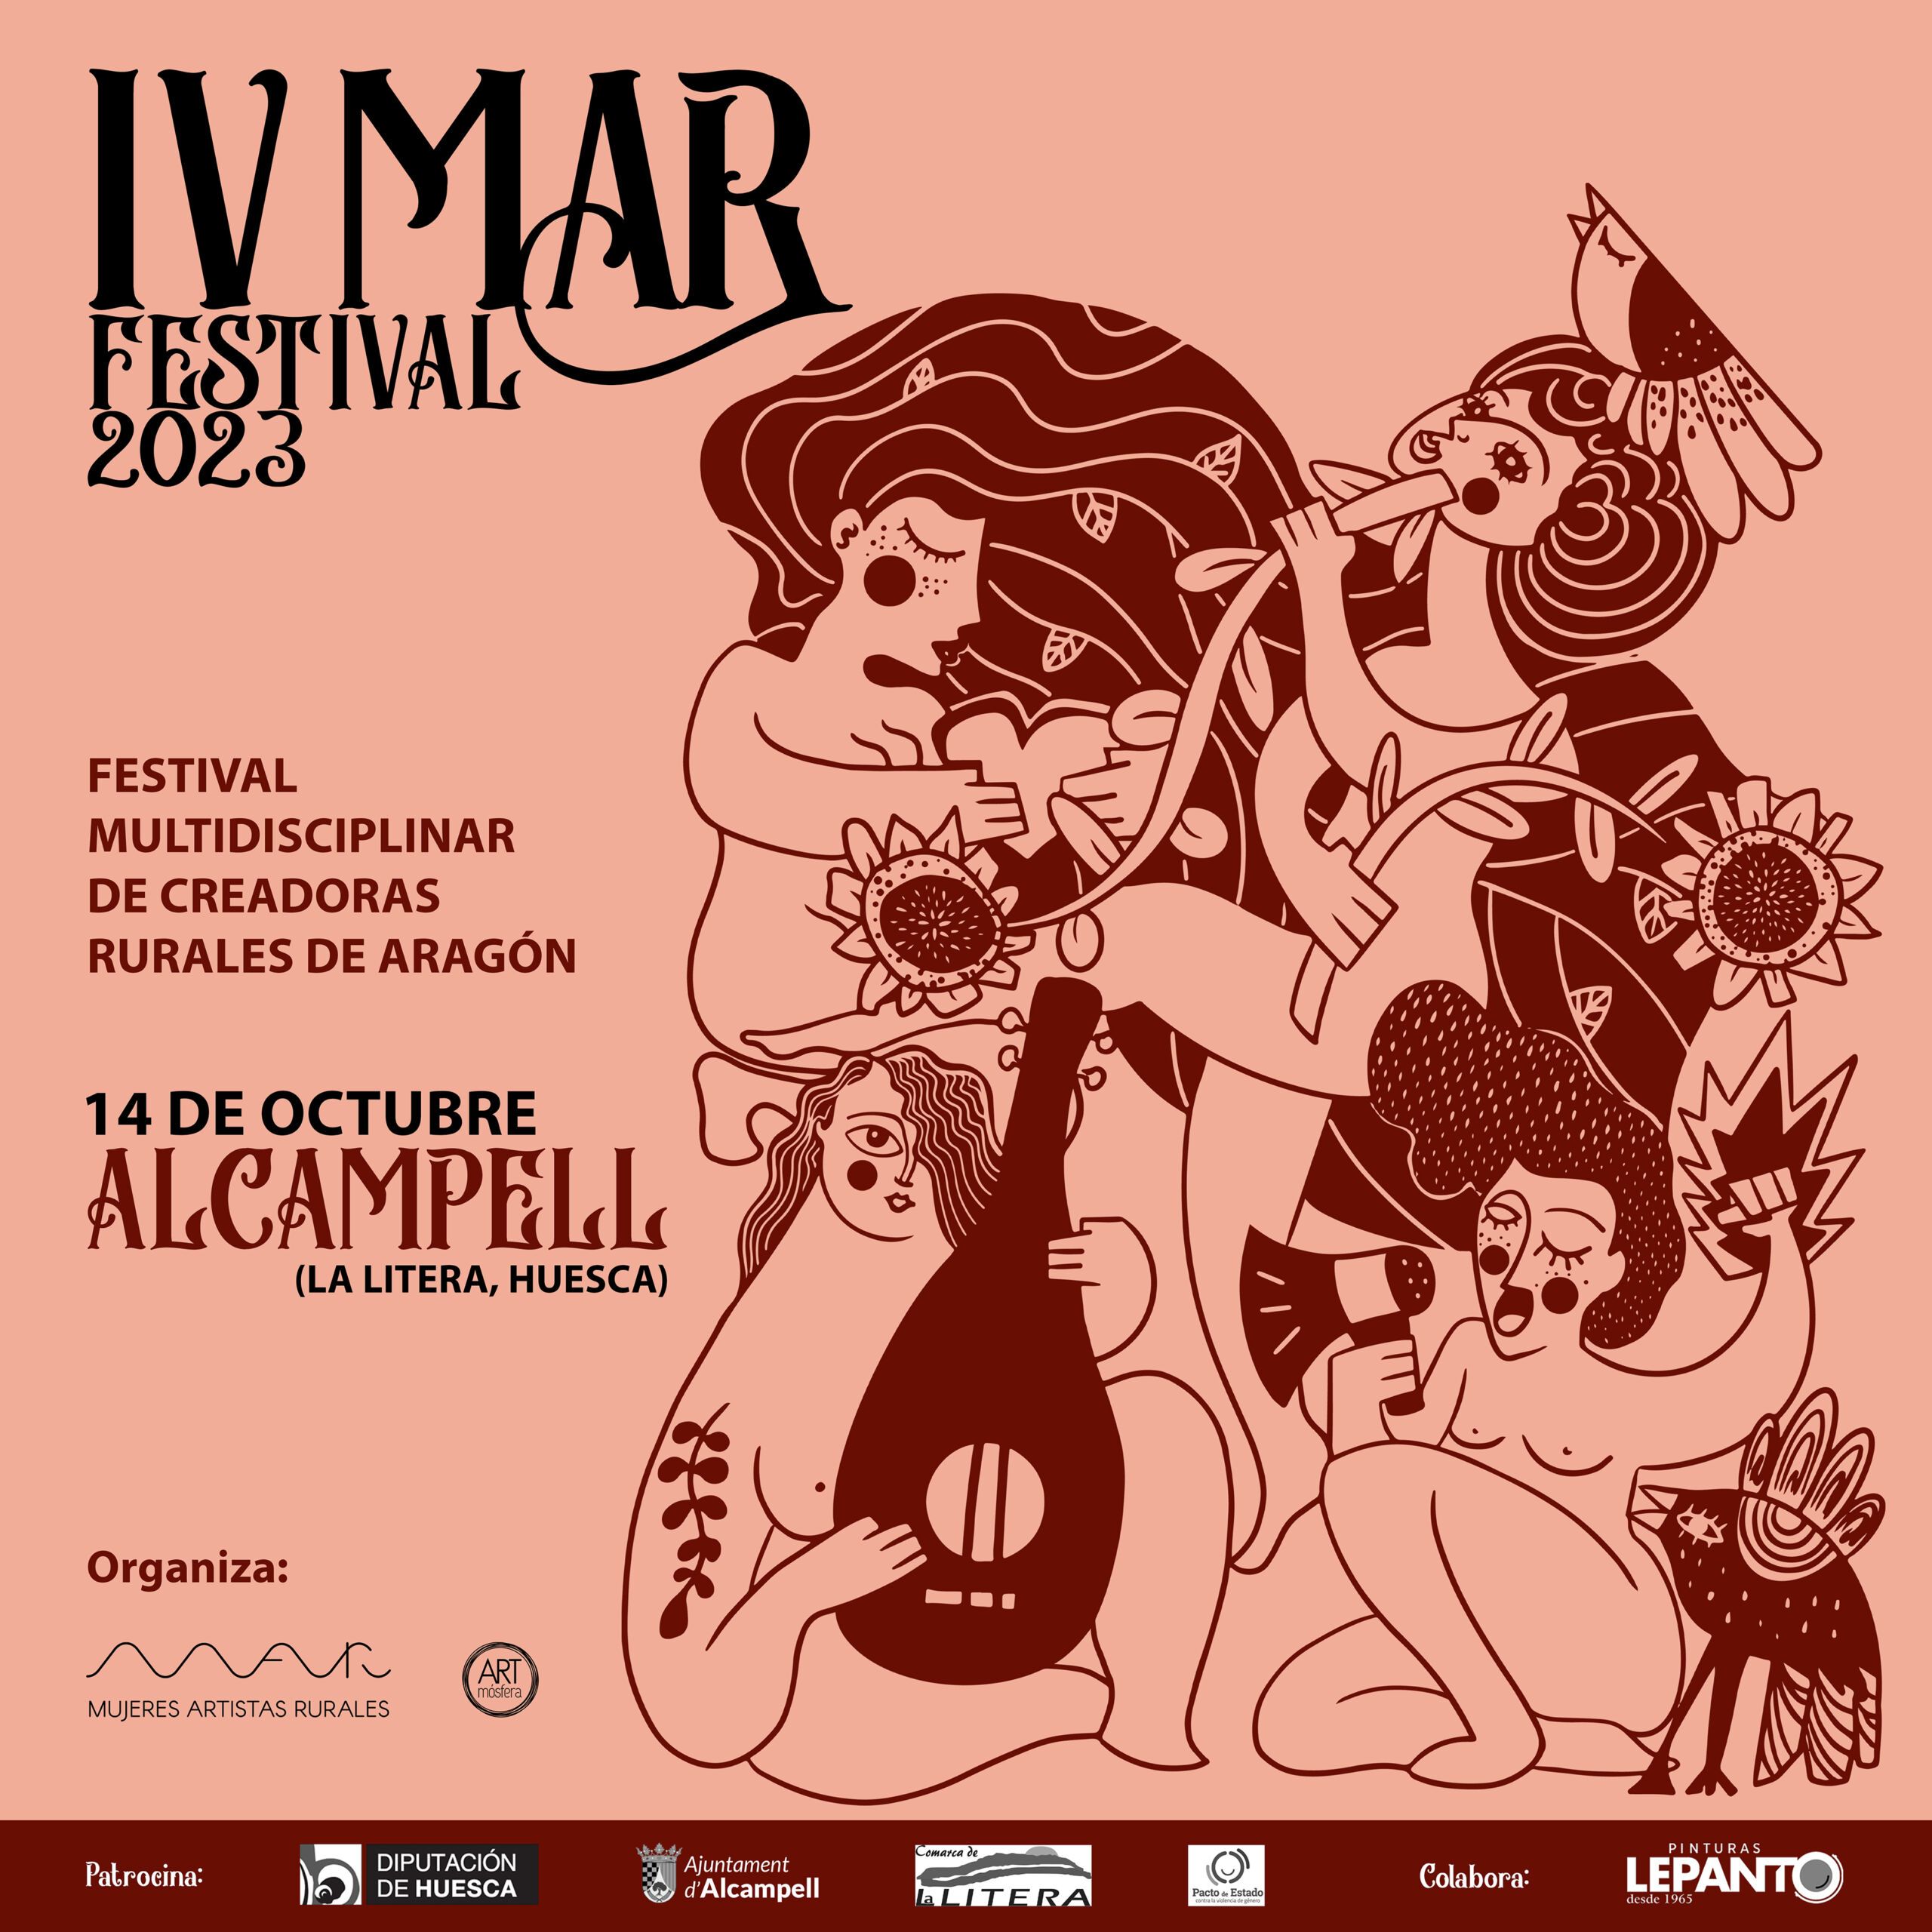 Cartel de la IV edición del MAR Festival realizado por la ilustradora oscense Nerea Mur Berroy